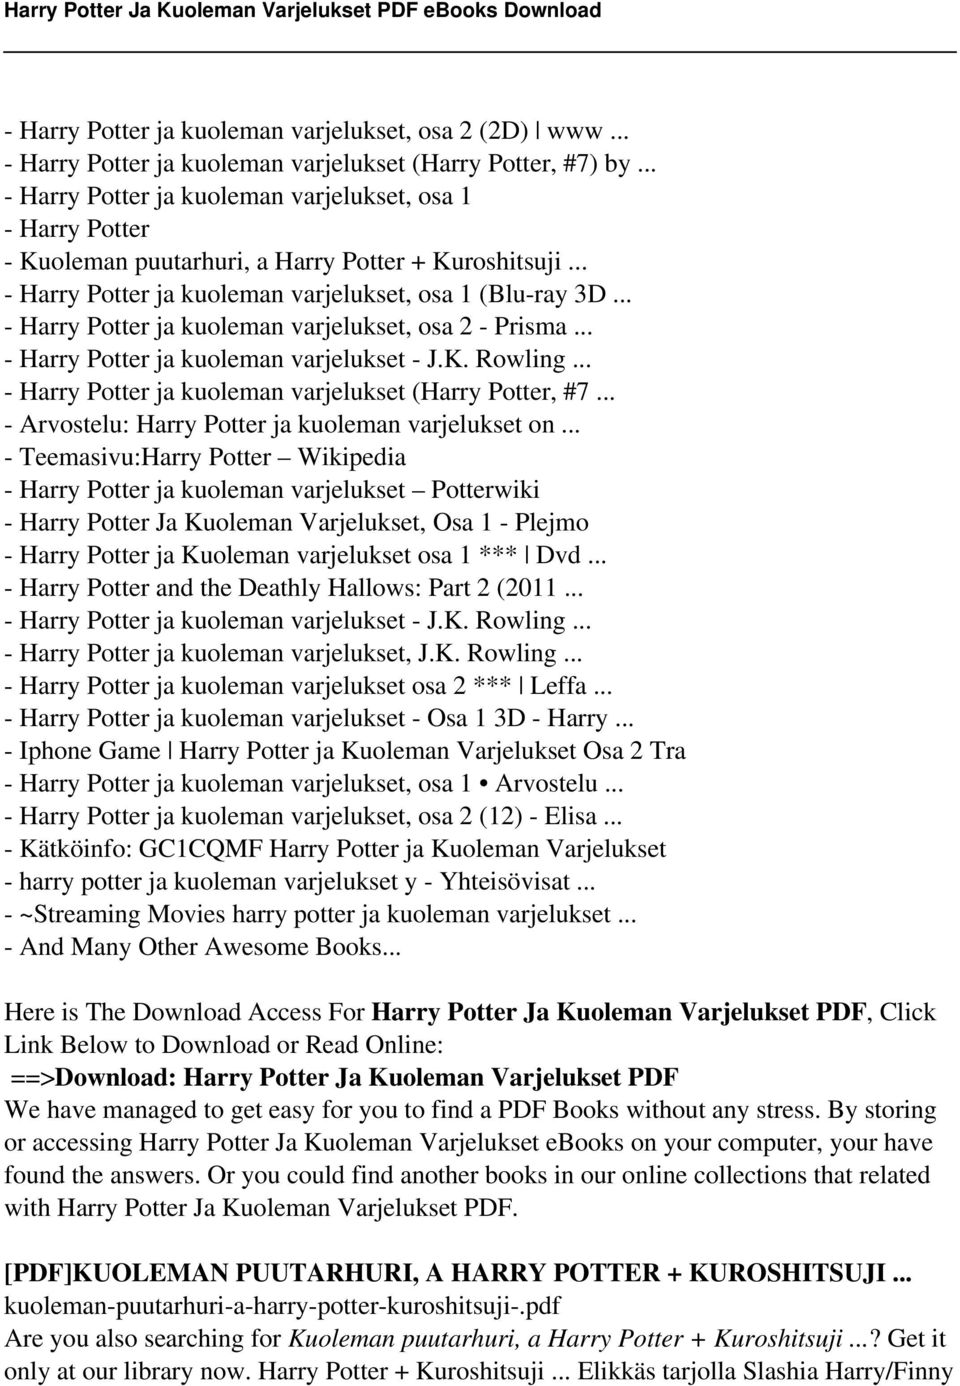 .. - Harry Potter ja kuoleman varjelukset, osa 2 - Prisma... - Harry Potter ja kuoleman varjelukset - J.K. Rowling... - Harry Potter ja kuoleman varjelukset (Harry Potter, #7.